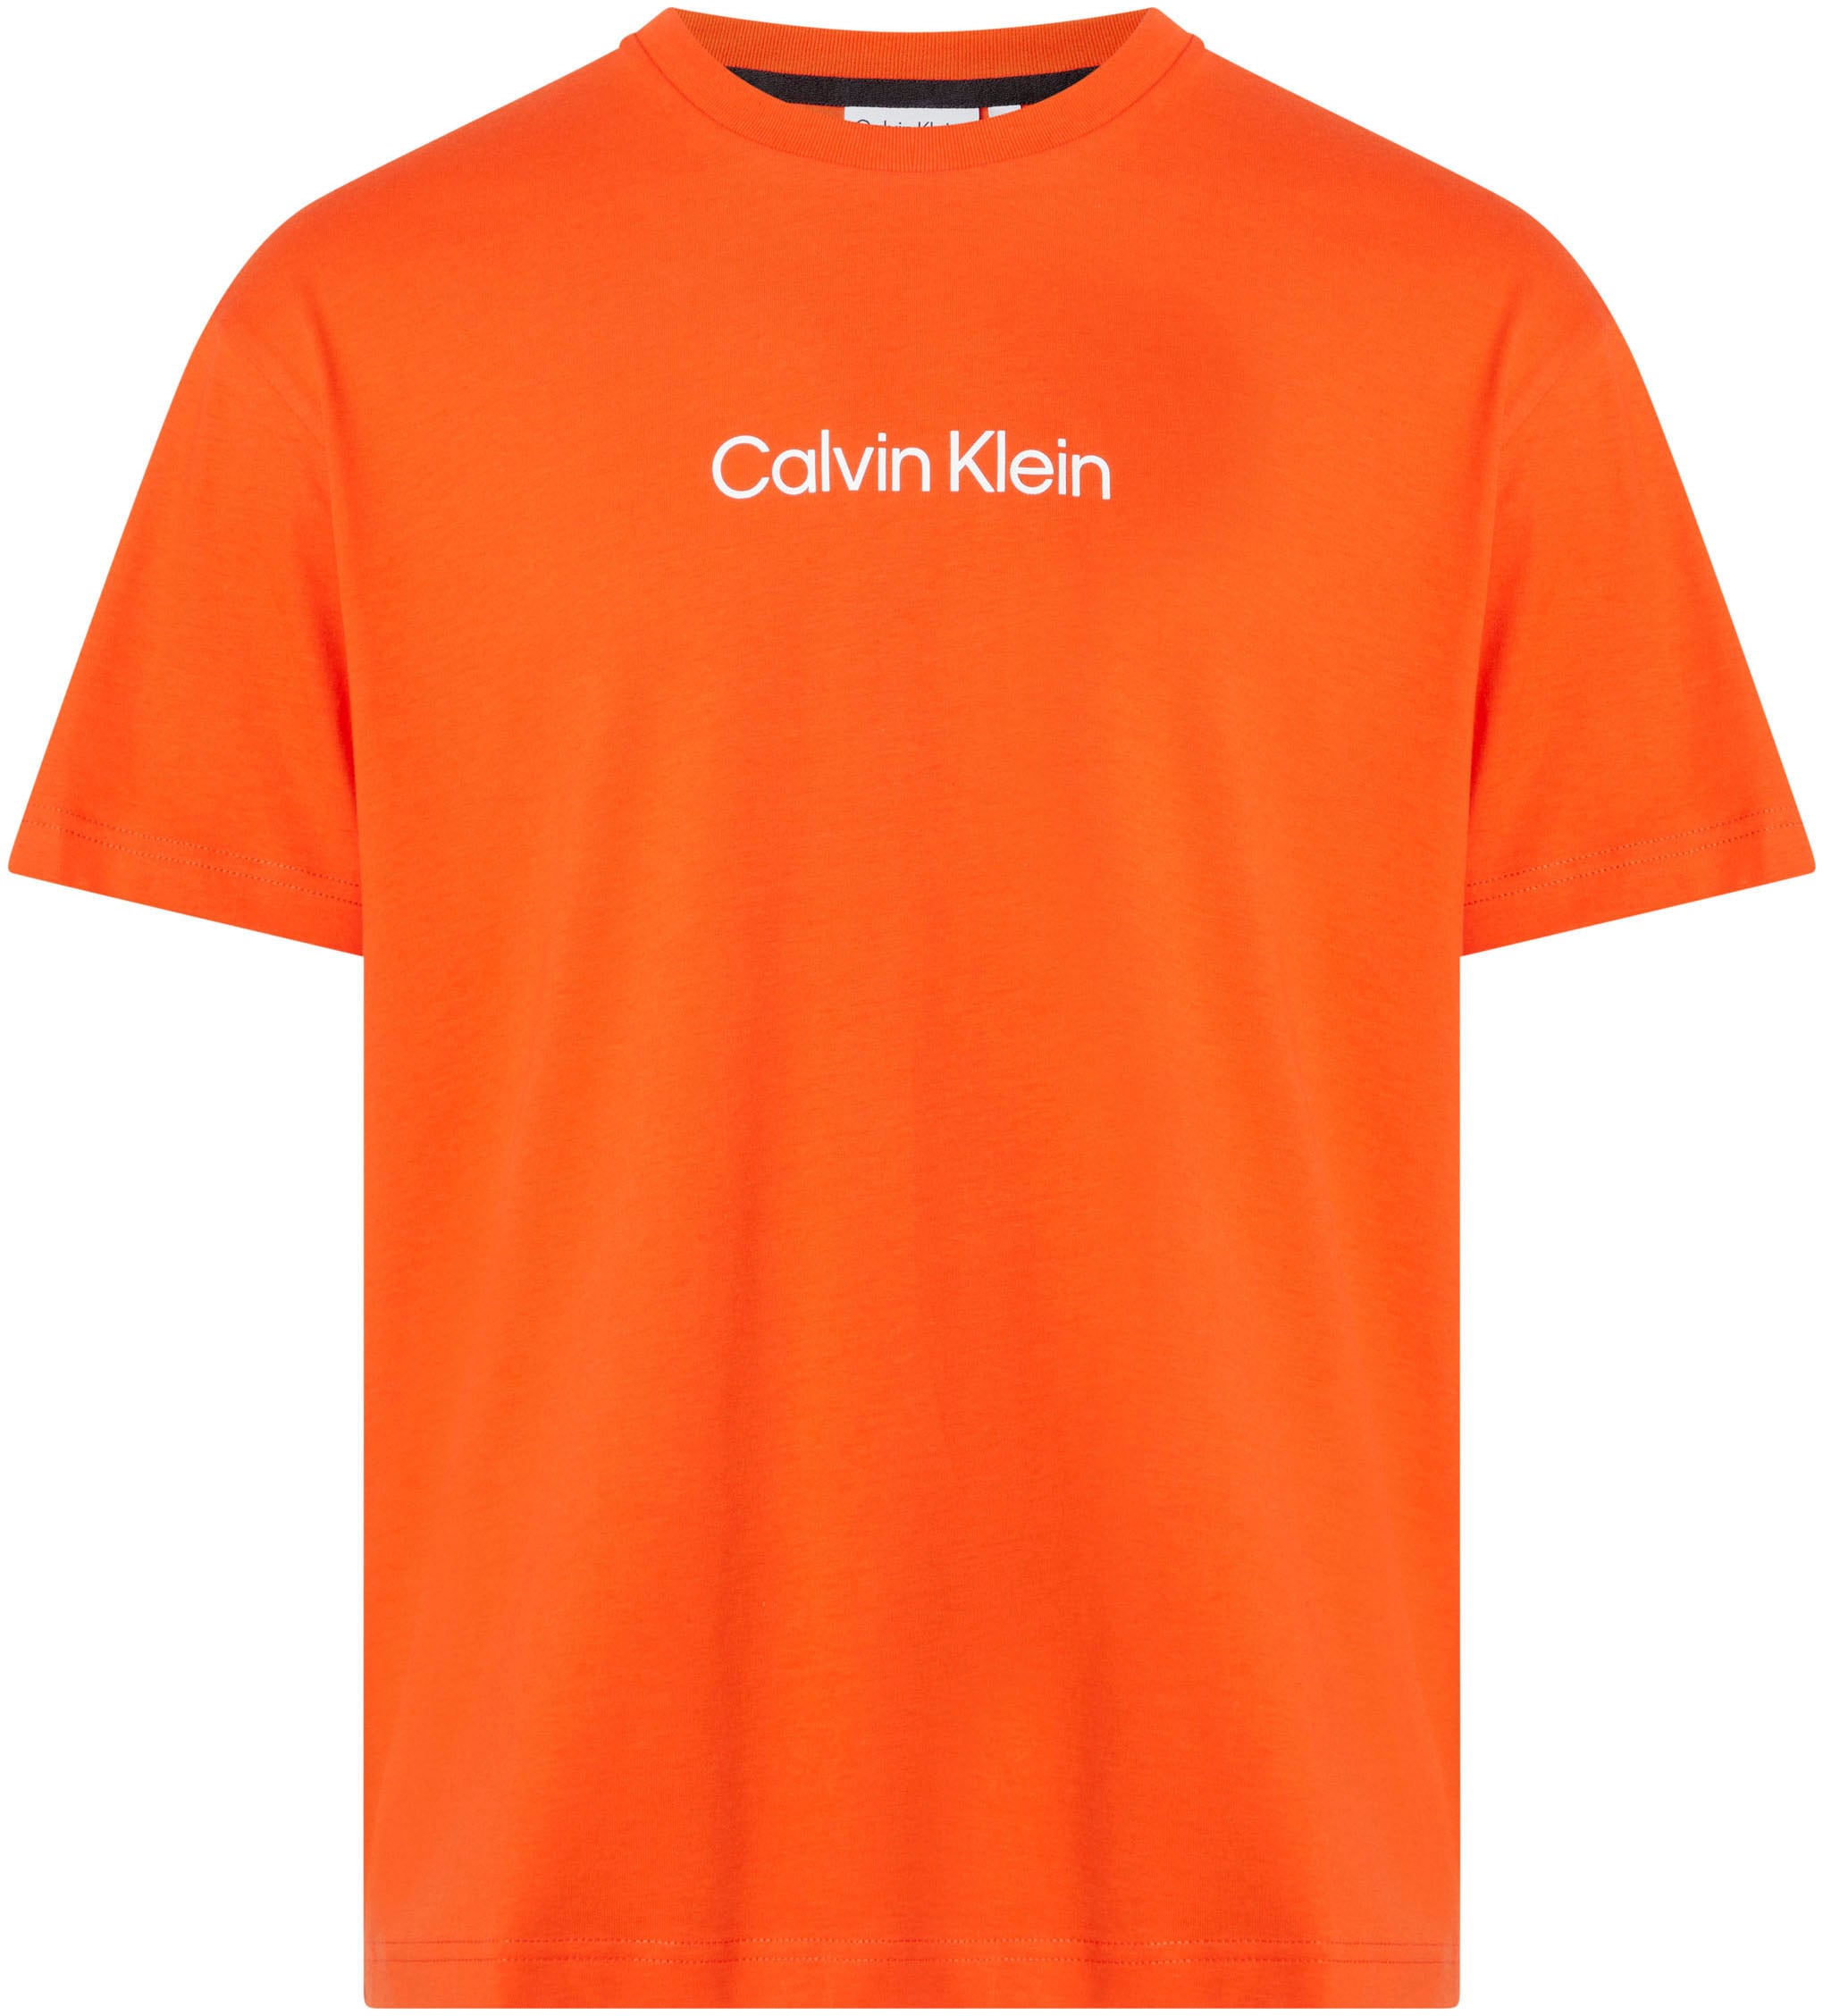 Calvin Klein T-Shirt aufgedrucktem mit T-SHIRT«, COMFORT LOGO bei Markenlabel ♕ »HERO